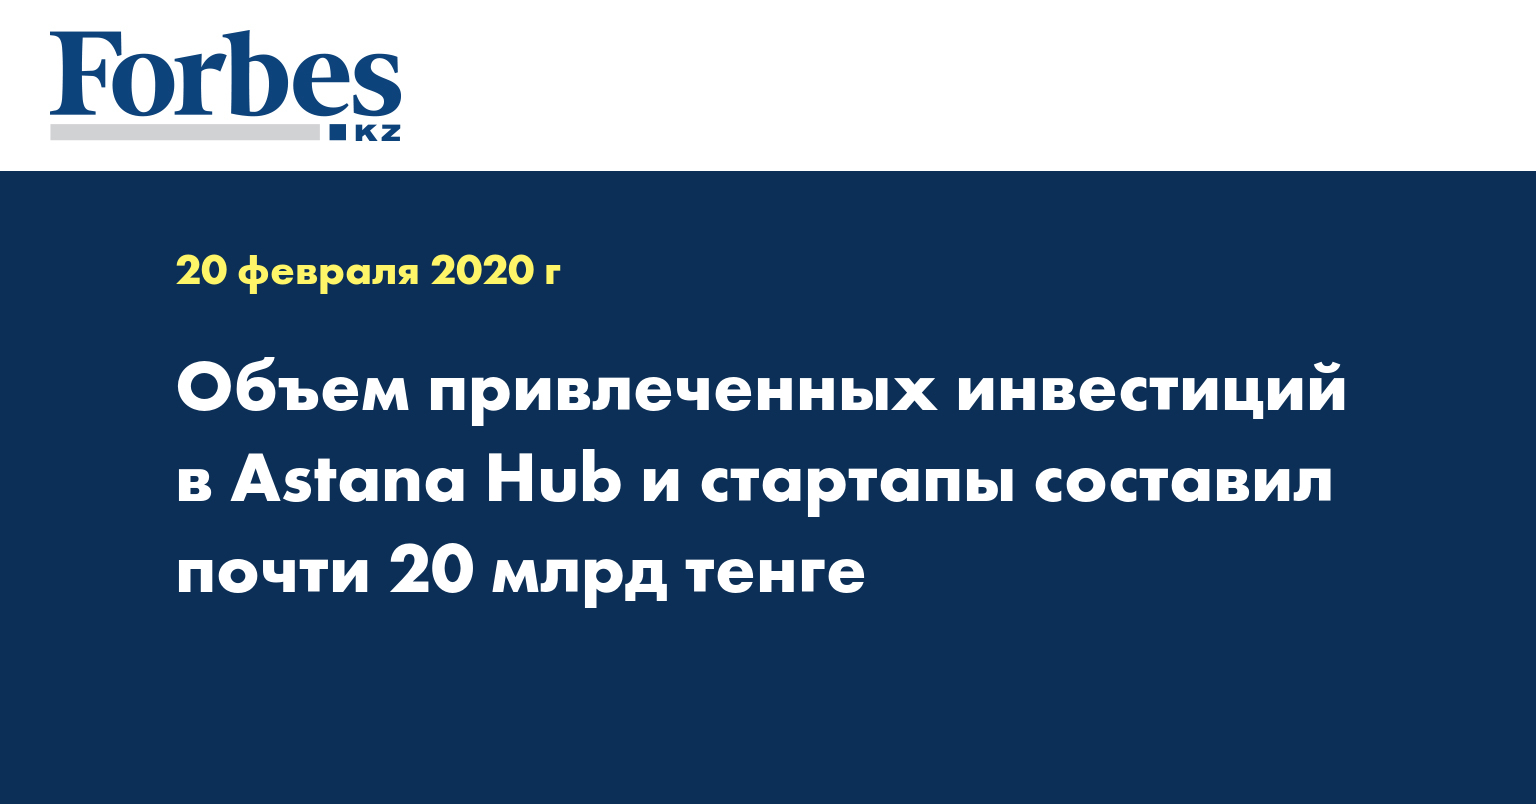  Объем привлеченных инвестиций в Astana Hub и стартапы составил почти 20 млрд тенге